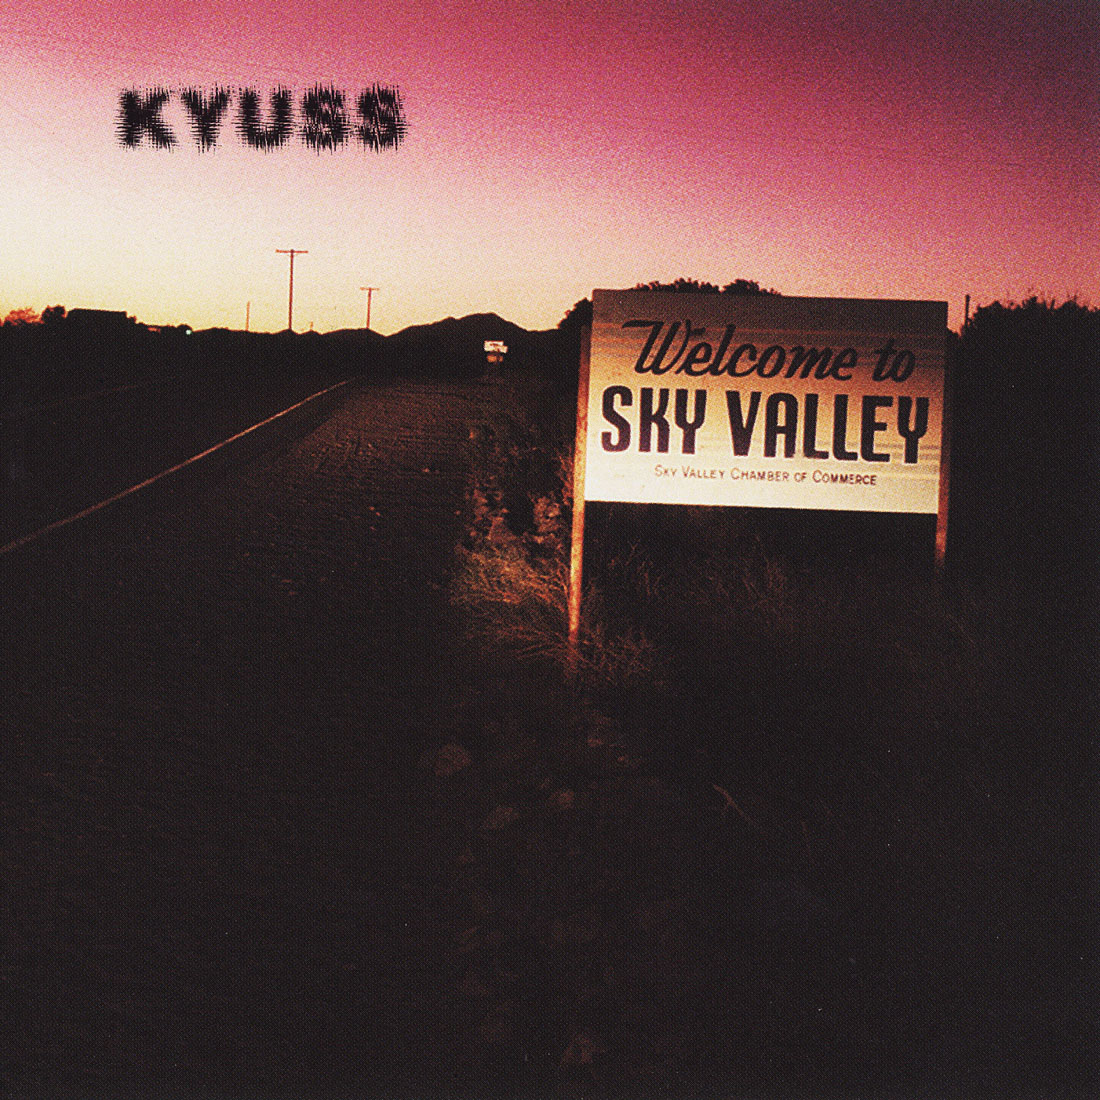 Kyuss lives